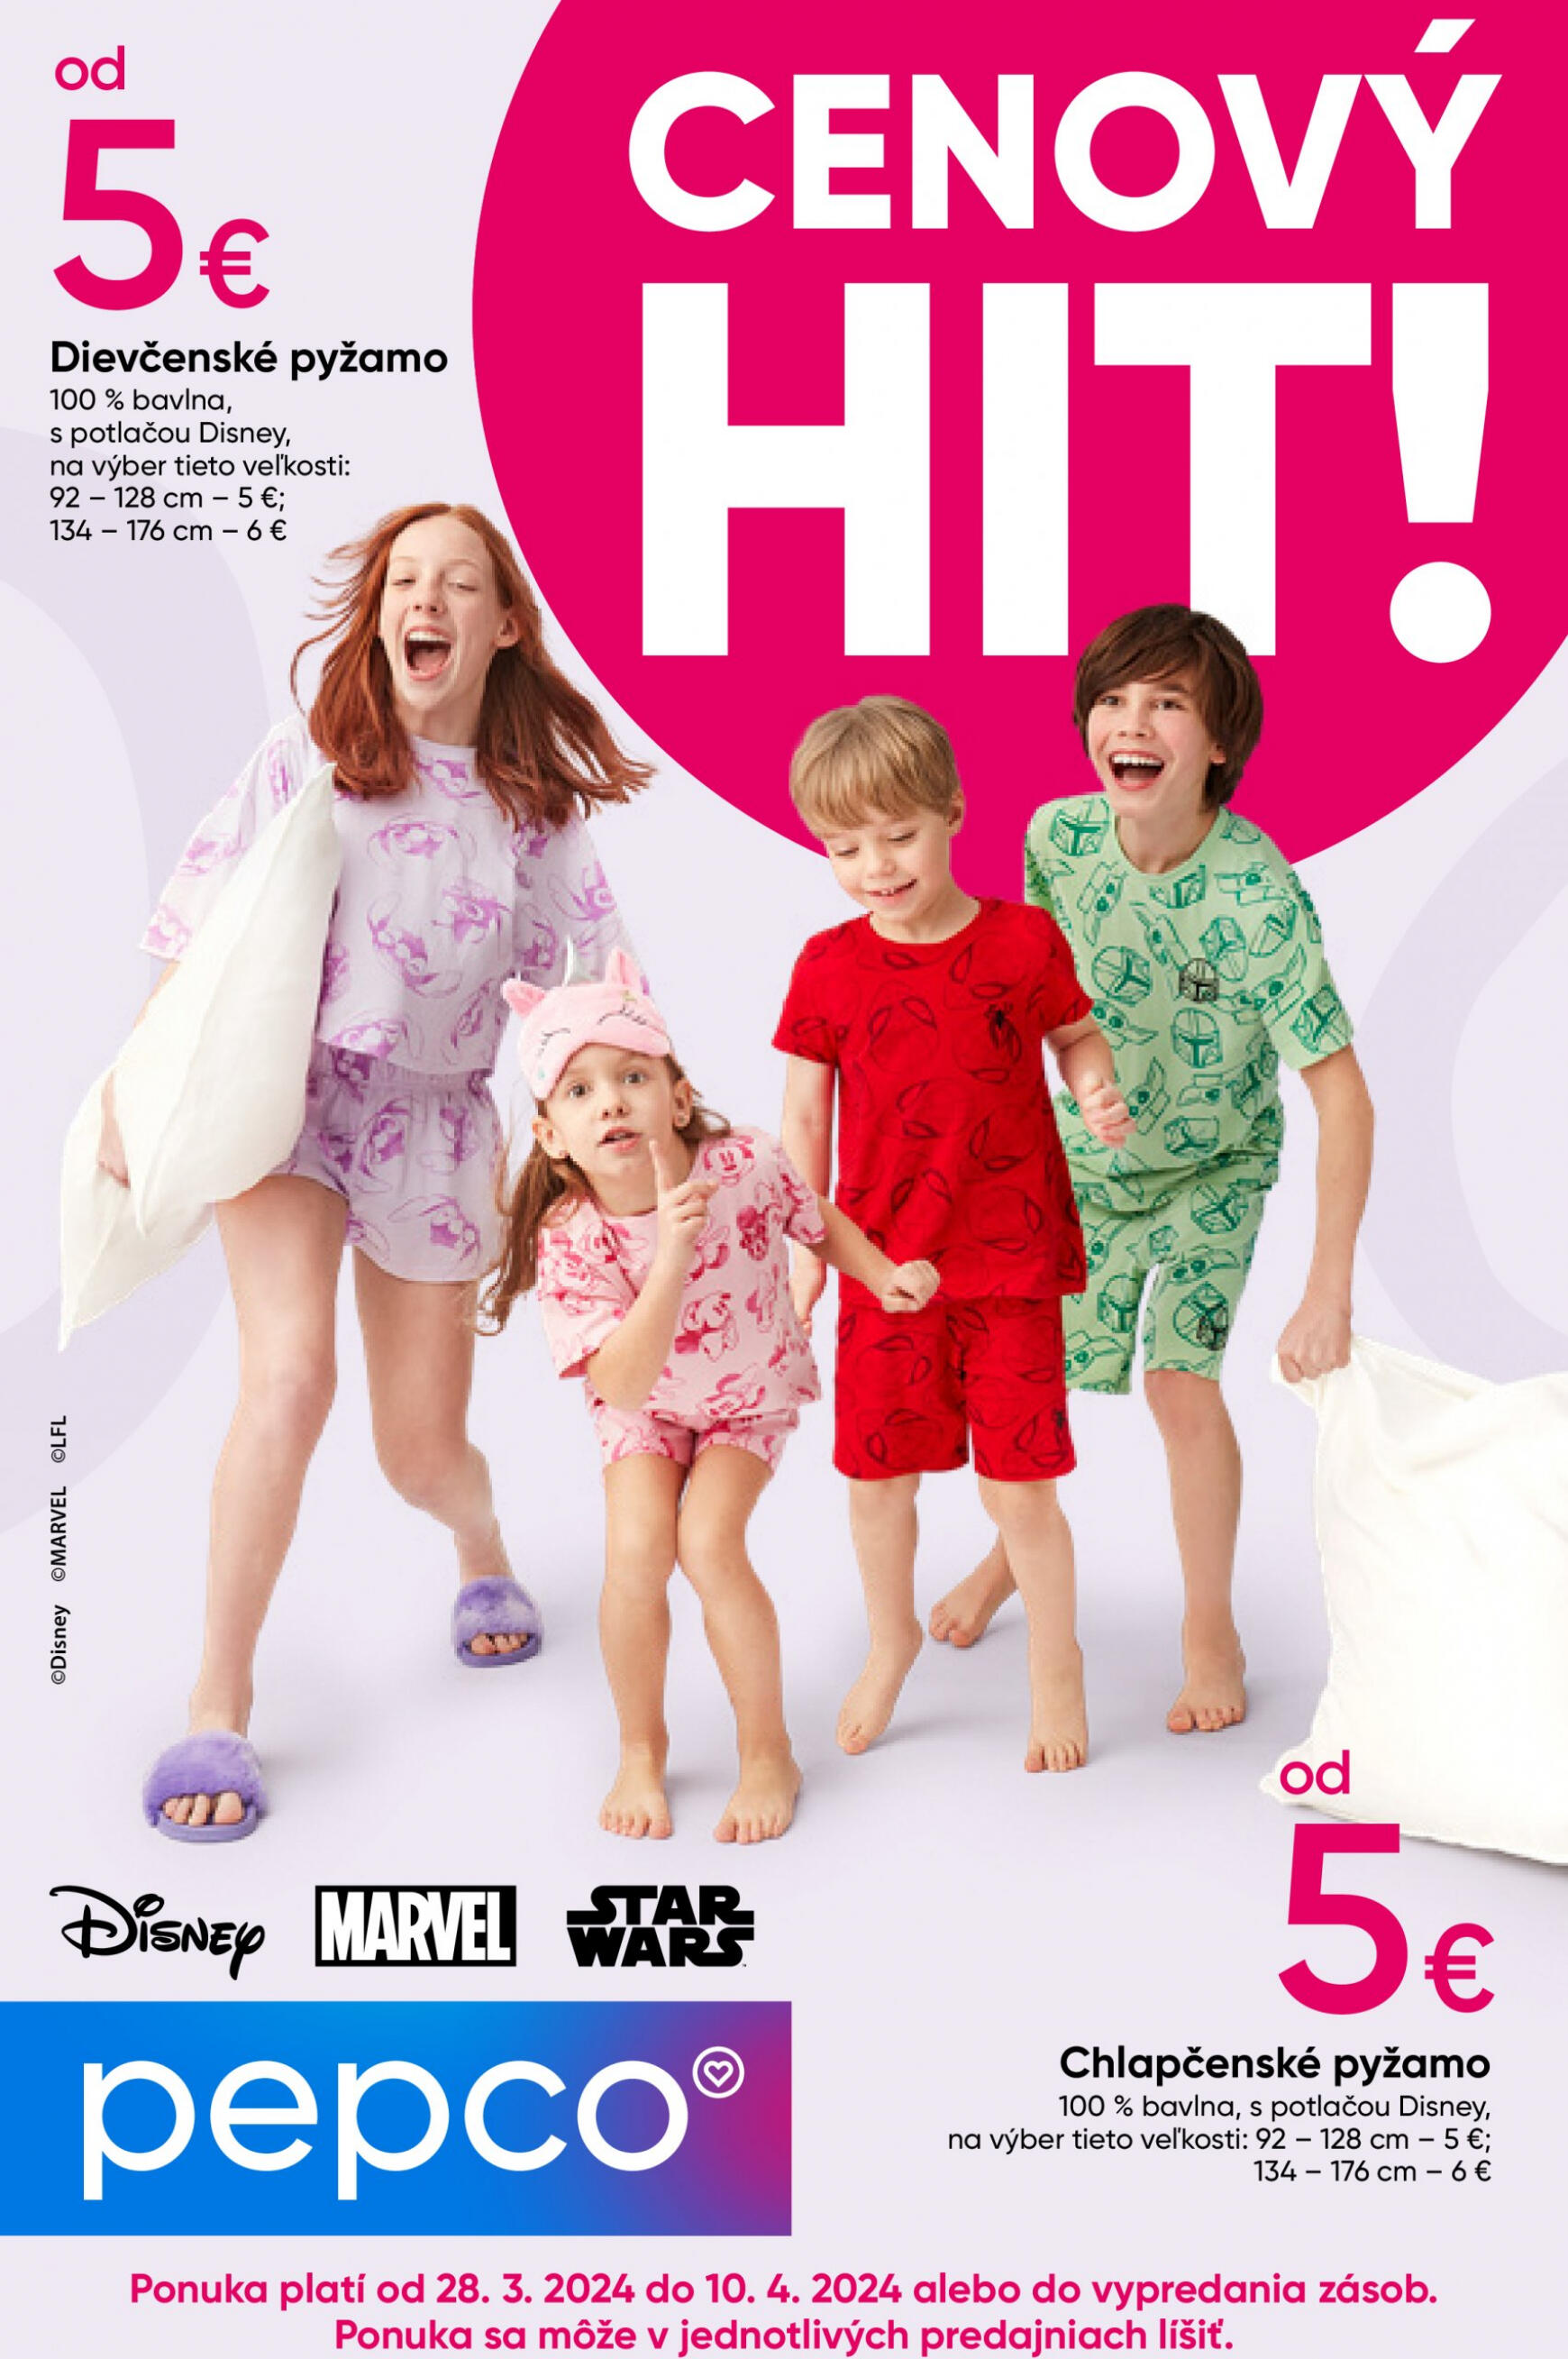 pepco - Pepco - Detské pyžamá Disney platný od 28.03.2024